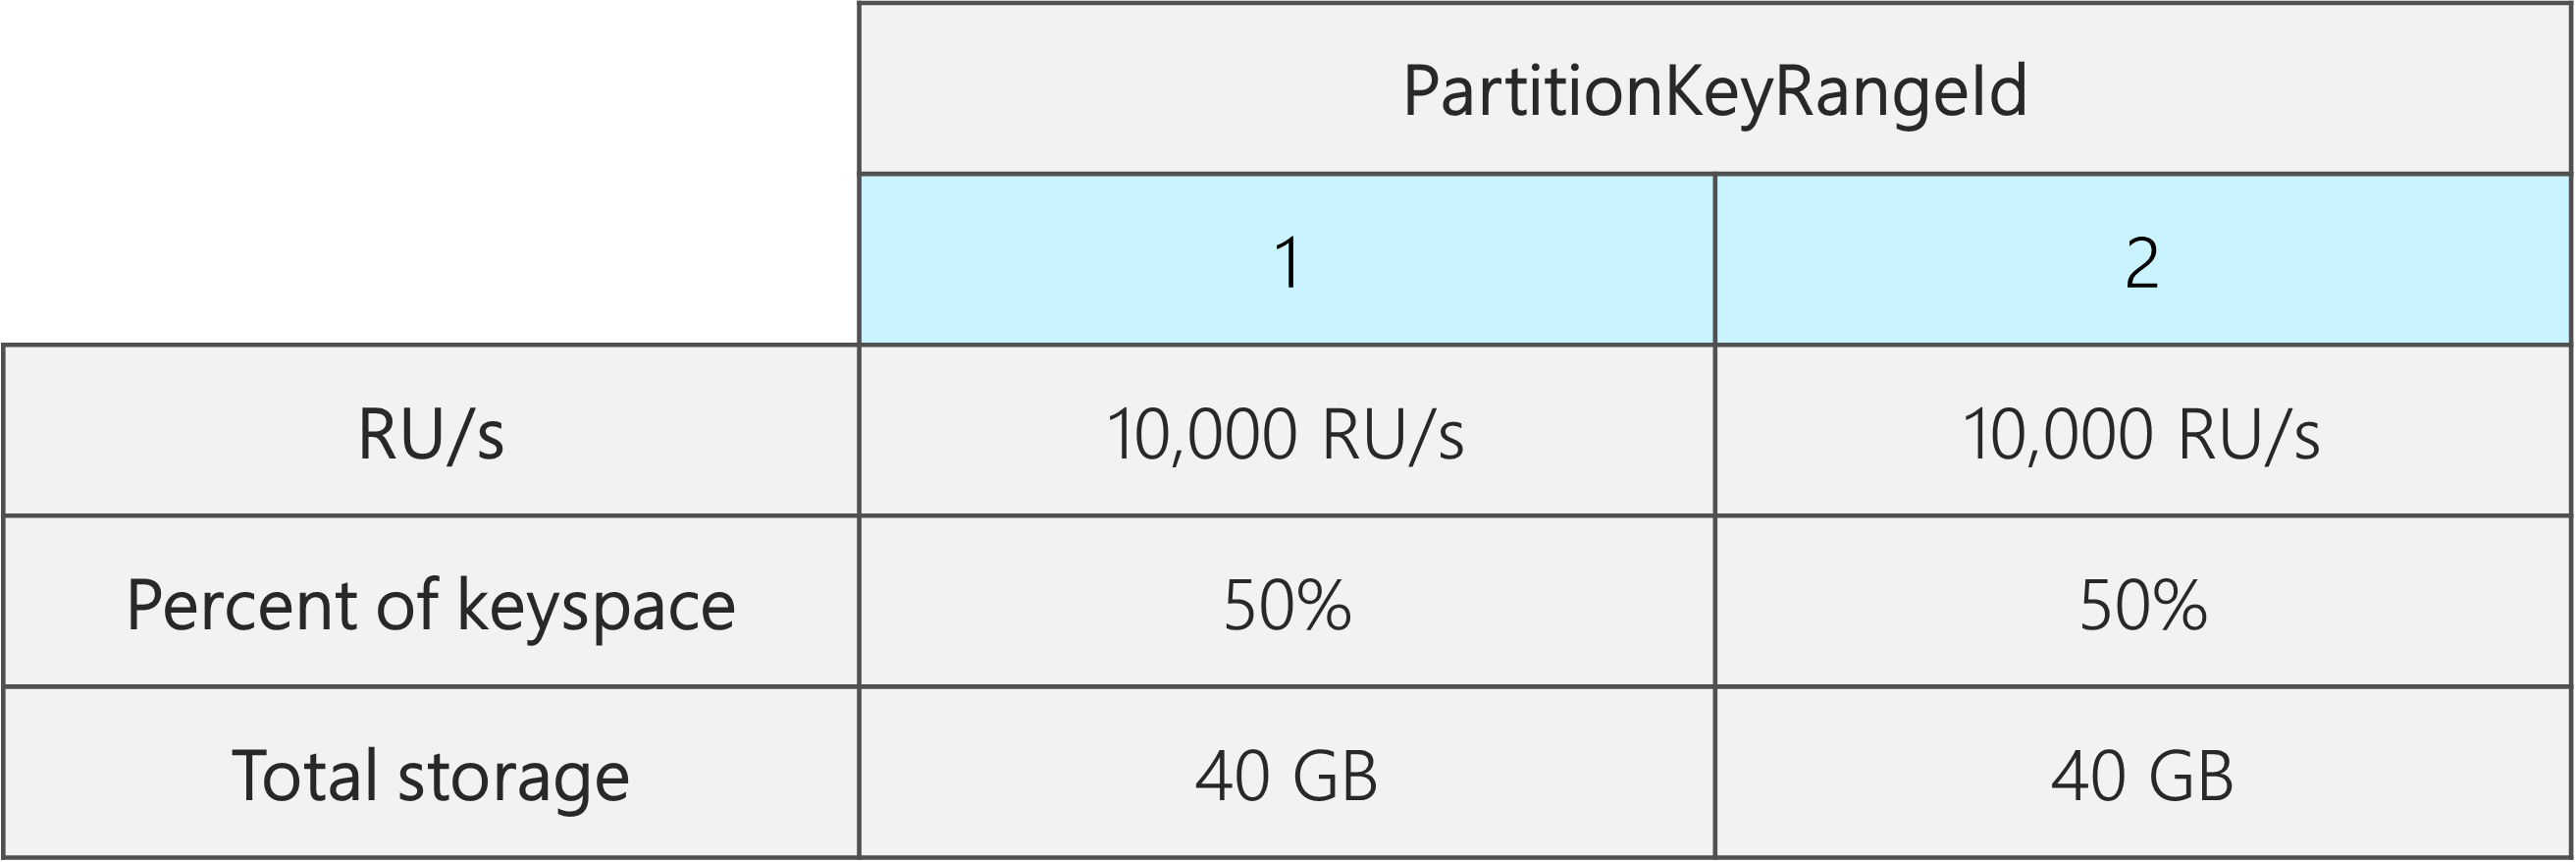 Two PartitionKeyRangeIds, masing-masing dengan 10.000 RU, 40 GB, dan 50% dari total keyspace